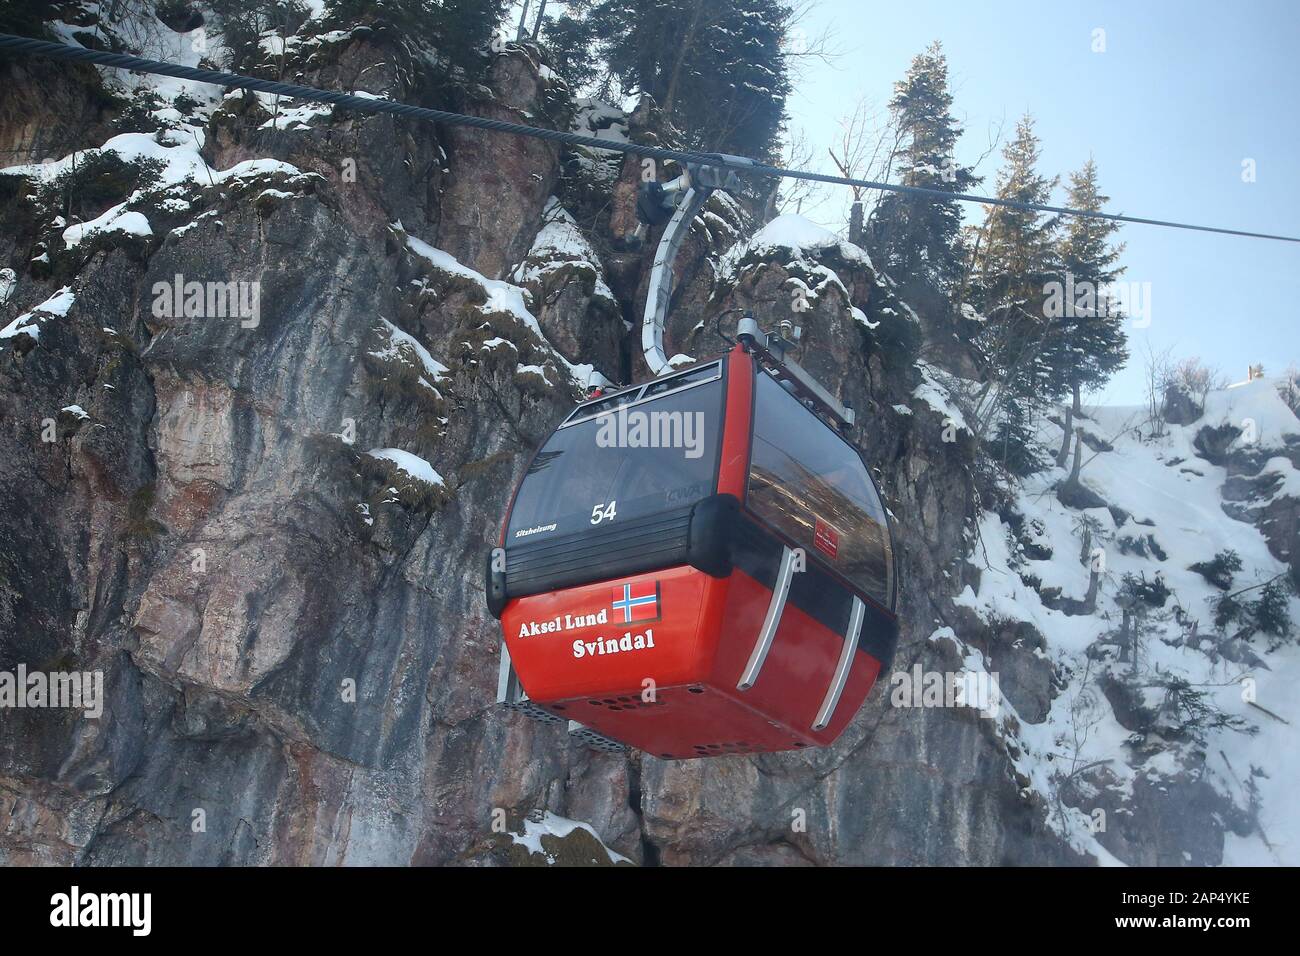 Le immagini di anteprima per la Audi FIS Coppa del Mondo di Sci Alpino in discesa in gara su gennaio 21 2020 in Kitzbuehel, Austria. Foto Stock